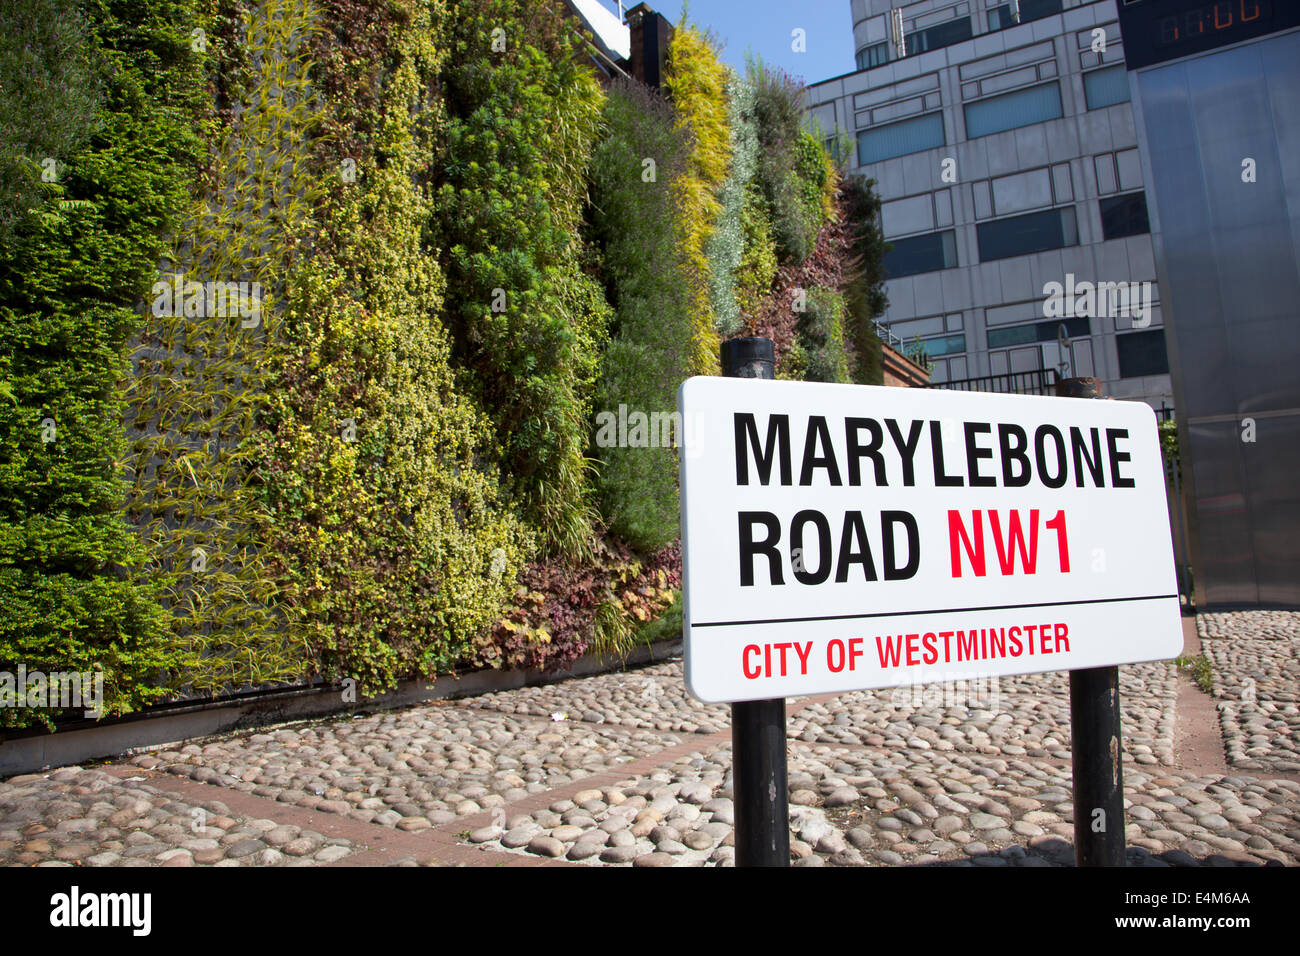 Reino Unido, London - pared verde en Marylebone Road es parte de TFL verde del plan de infraestructura para mejorar la calidad del aire local. Foto de stock